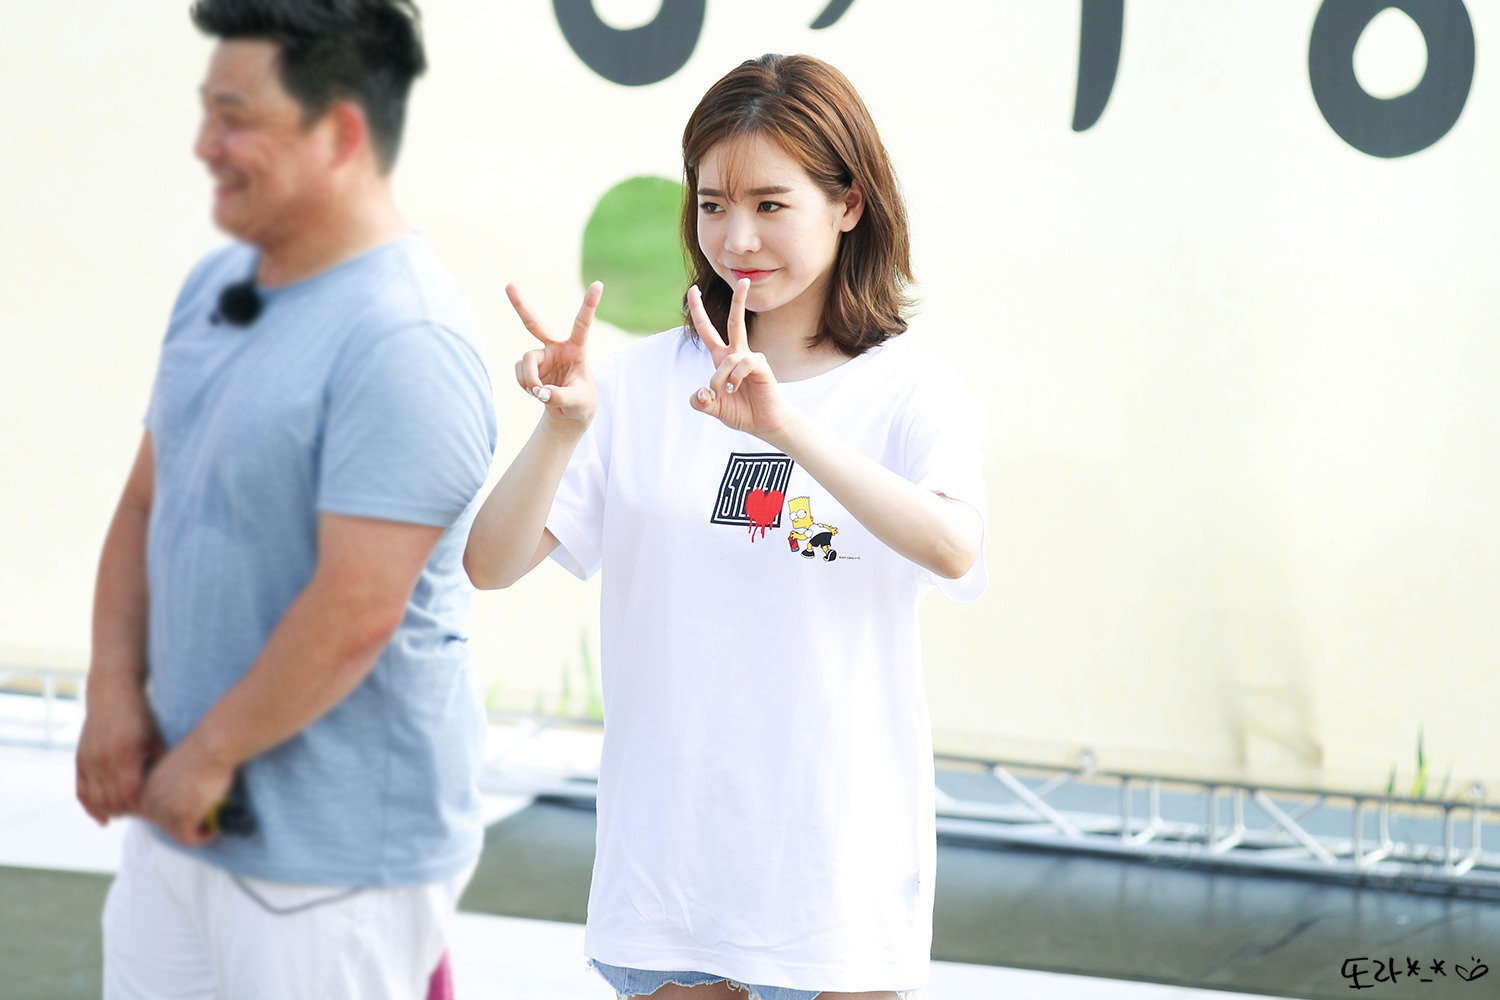 [PIC][16-05-2016]Sunny ghi hình cho chương trình "재래시장 살리자" của kênh JTBC tại Busan vào hôm nay - Page 13 221C93415950EEDB079CC9